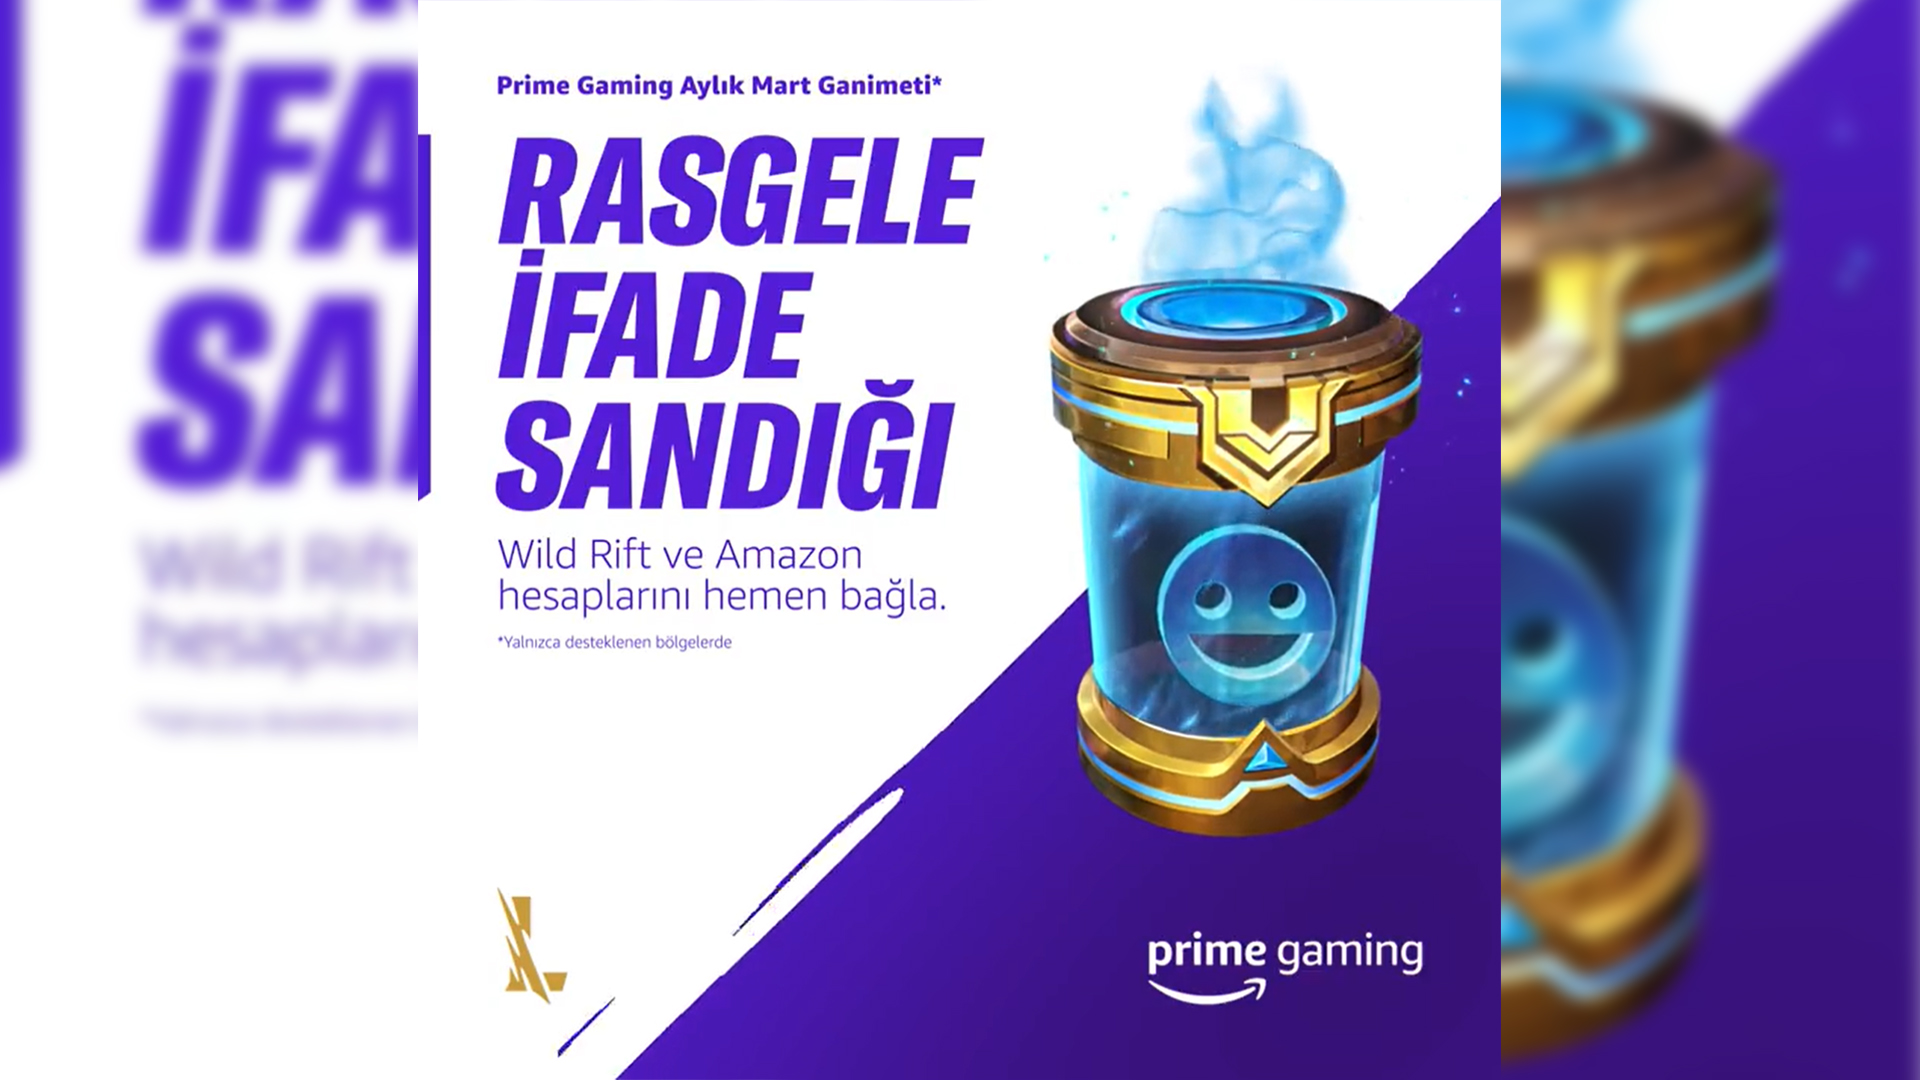 Prime Gaming’in Wild Rift Mart ayı ganimeti Rasgele İfade Sandığı oldu!